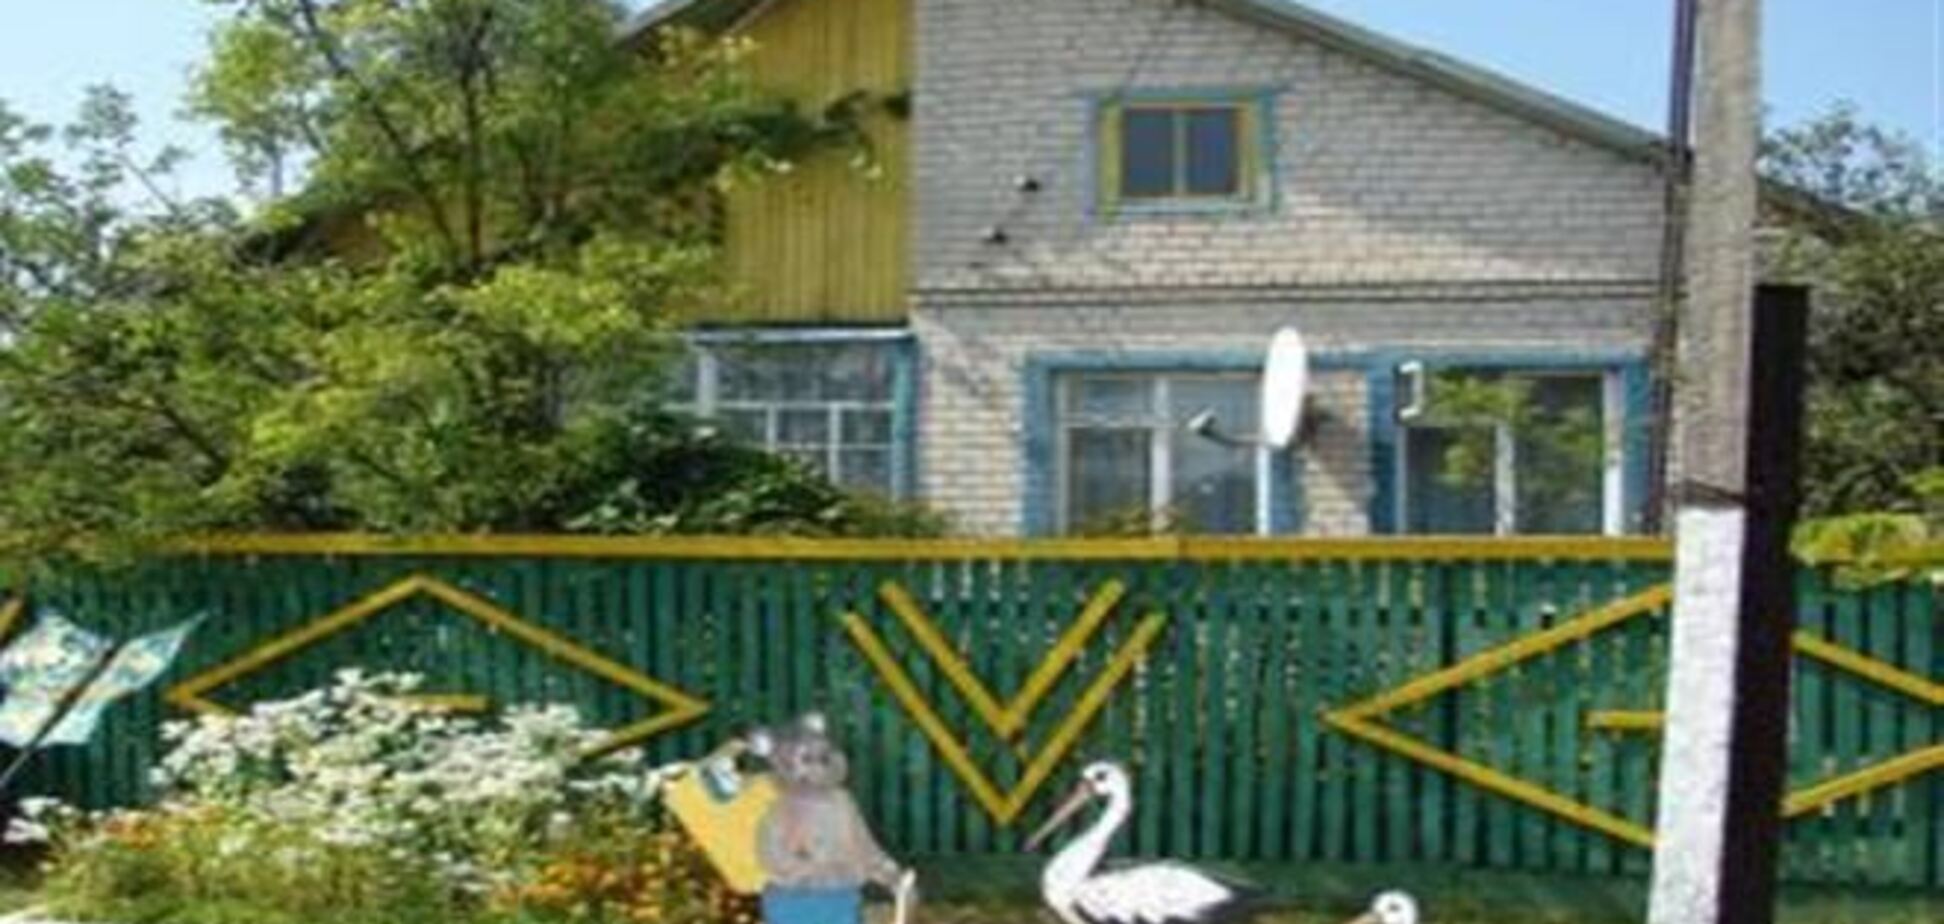 Украинцы заплатят налог на недвижимость не на жилую площадь, а на общую